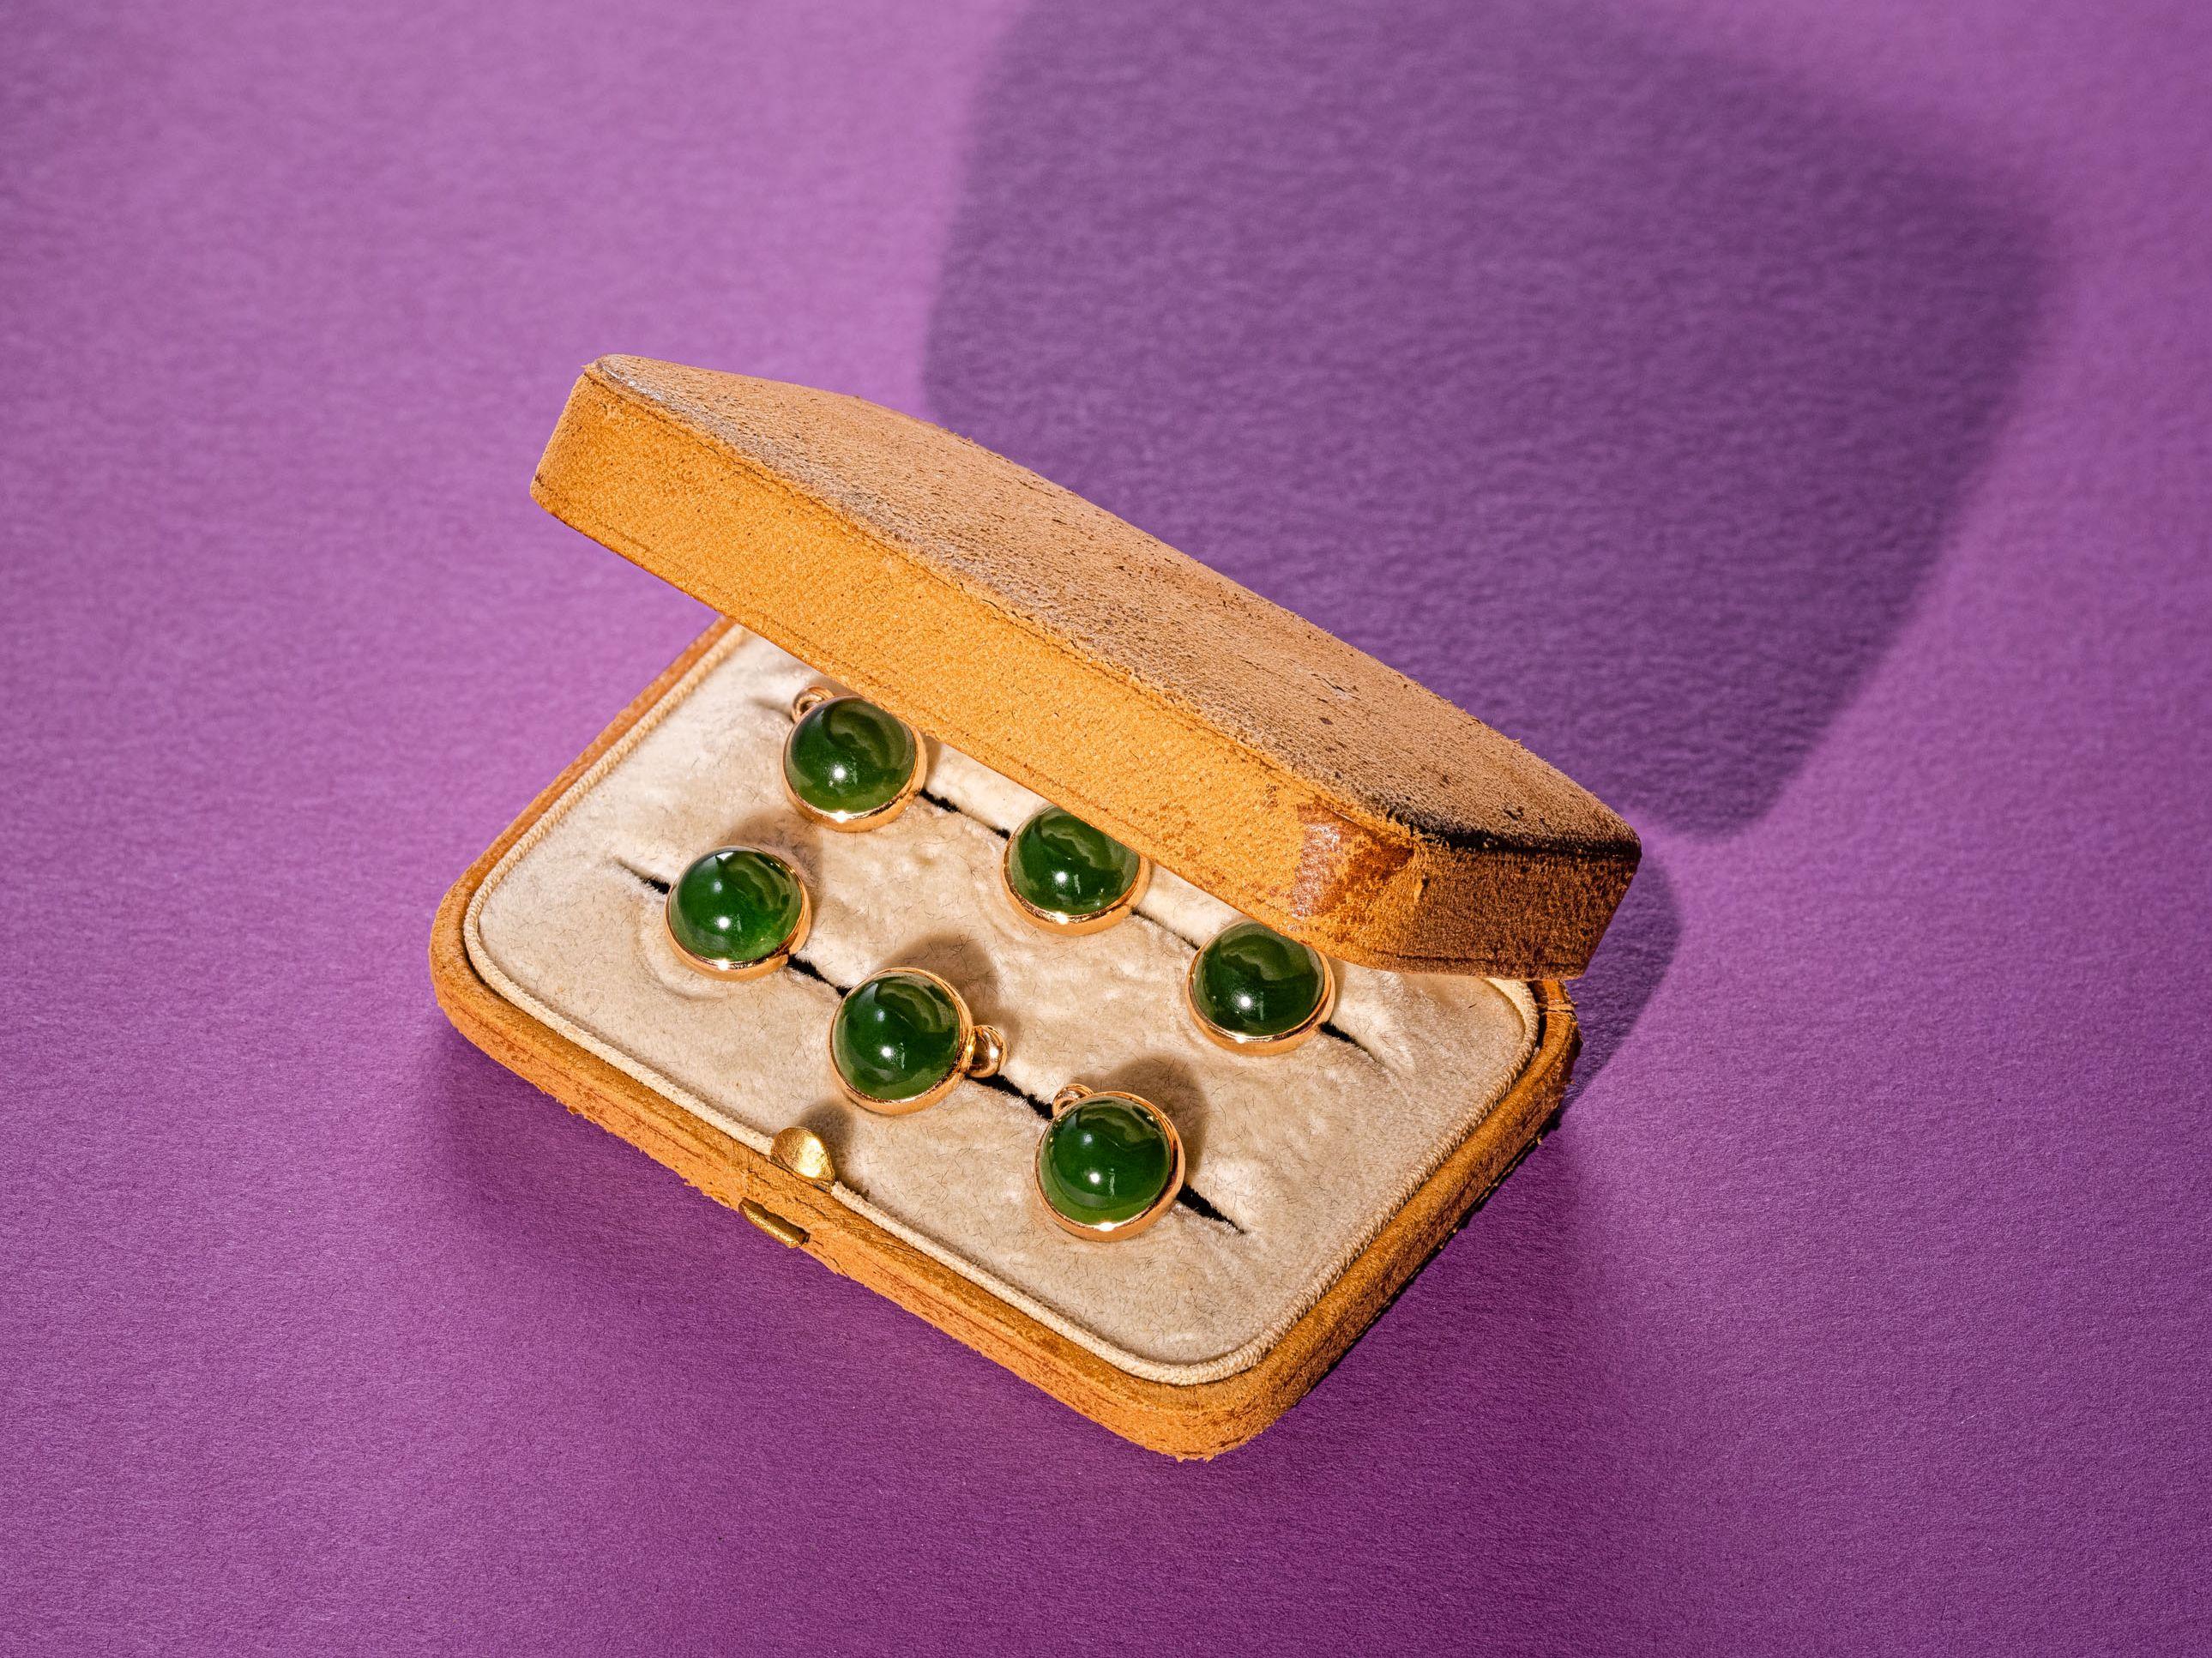 Satz von 6 eleganten Kleiderknöpfen aus Gold und Jade-Cabochons.
Anfang des 20. Jahrhunderts.
Perfekt für den distinguierten Gentleman, der gerne ein grünes Samt-Dinnerjackett mit diesen eleganten Jadeknöpfen kombiniert!
Tiffany Box macht mit!